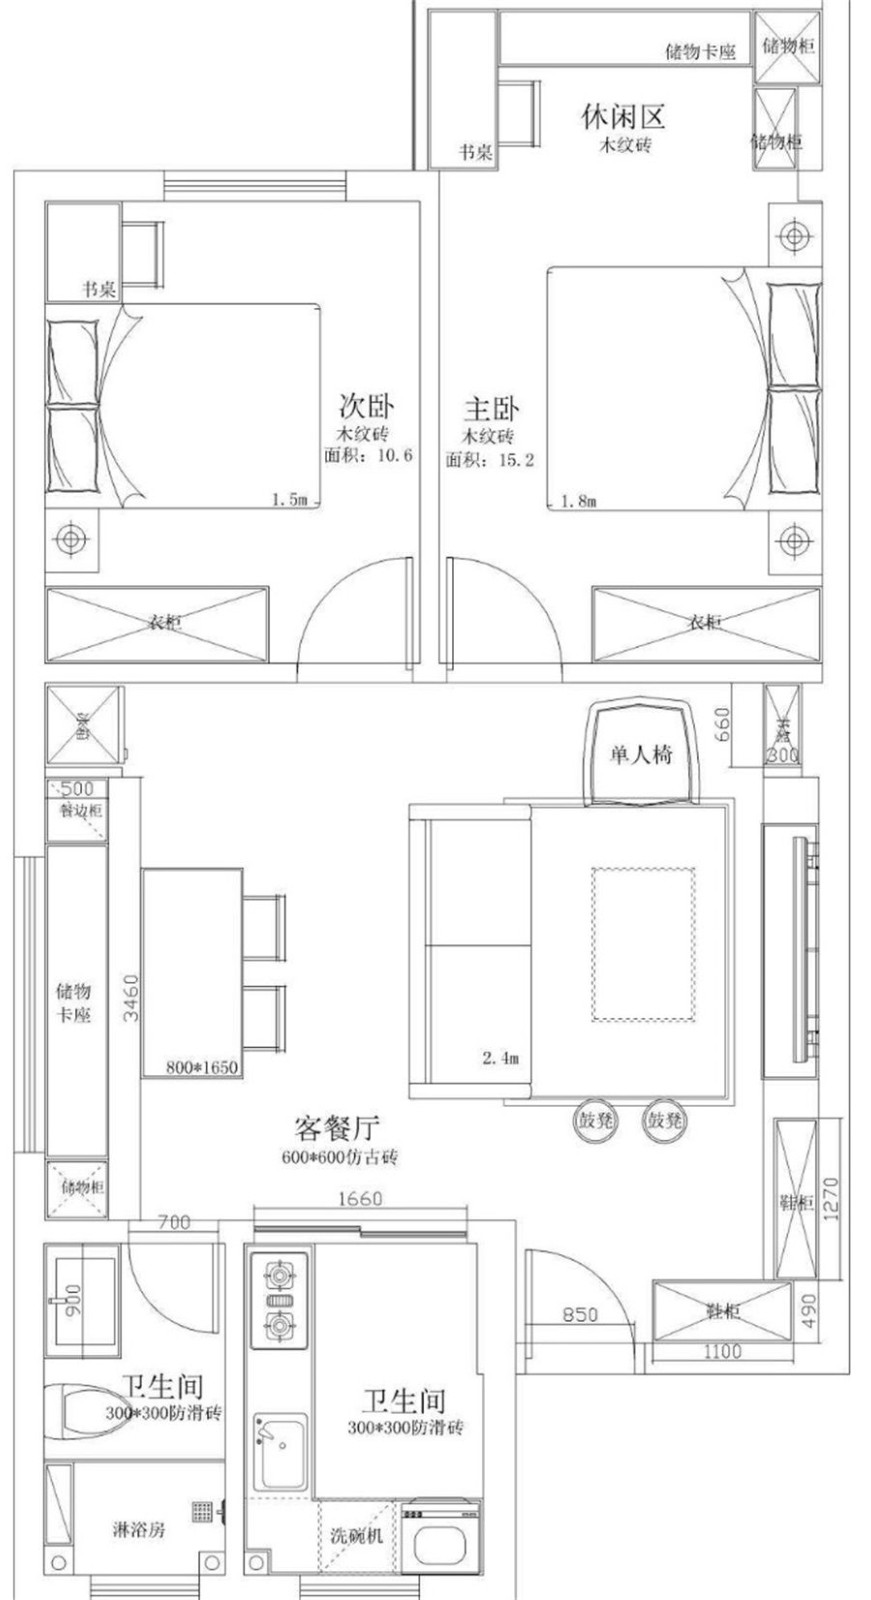 89现代两房装修效果图,共享优雅慢生活装修案例效果图-美广网(图1)